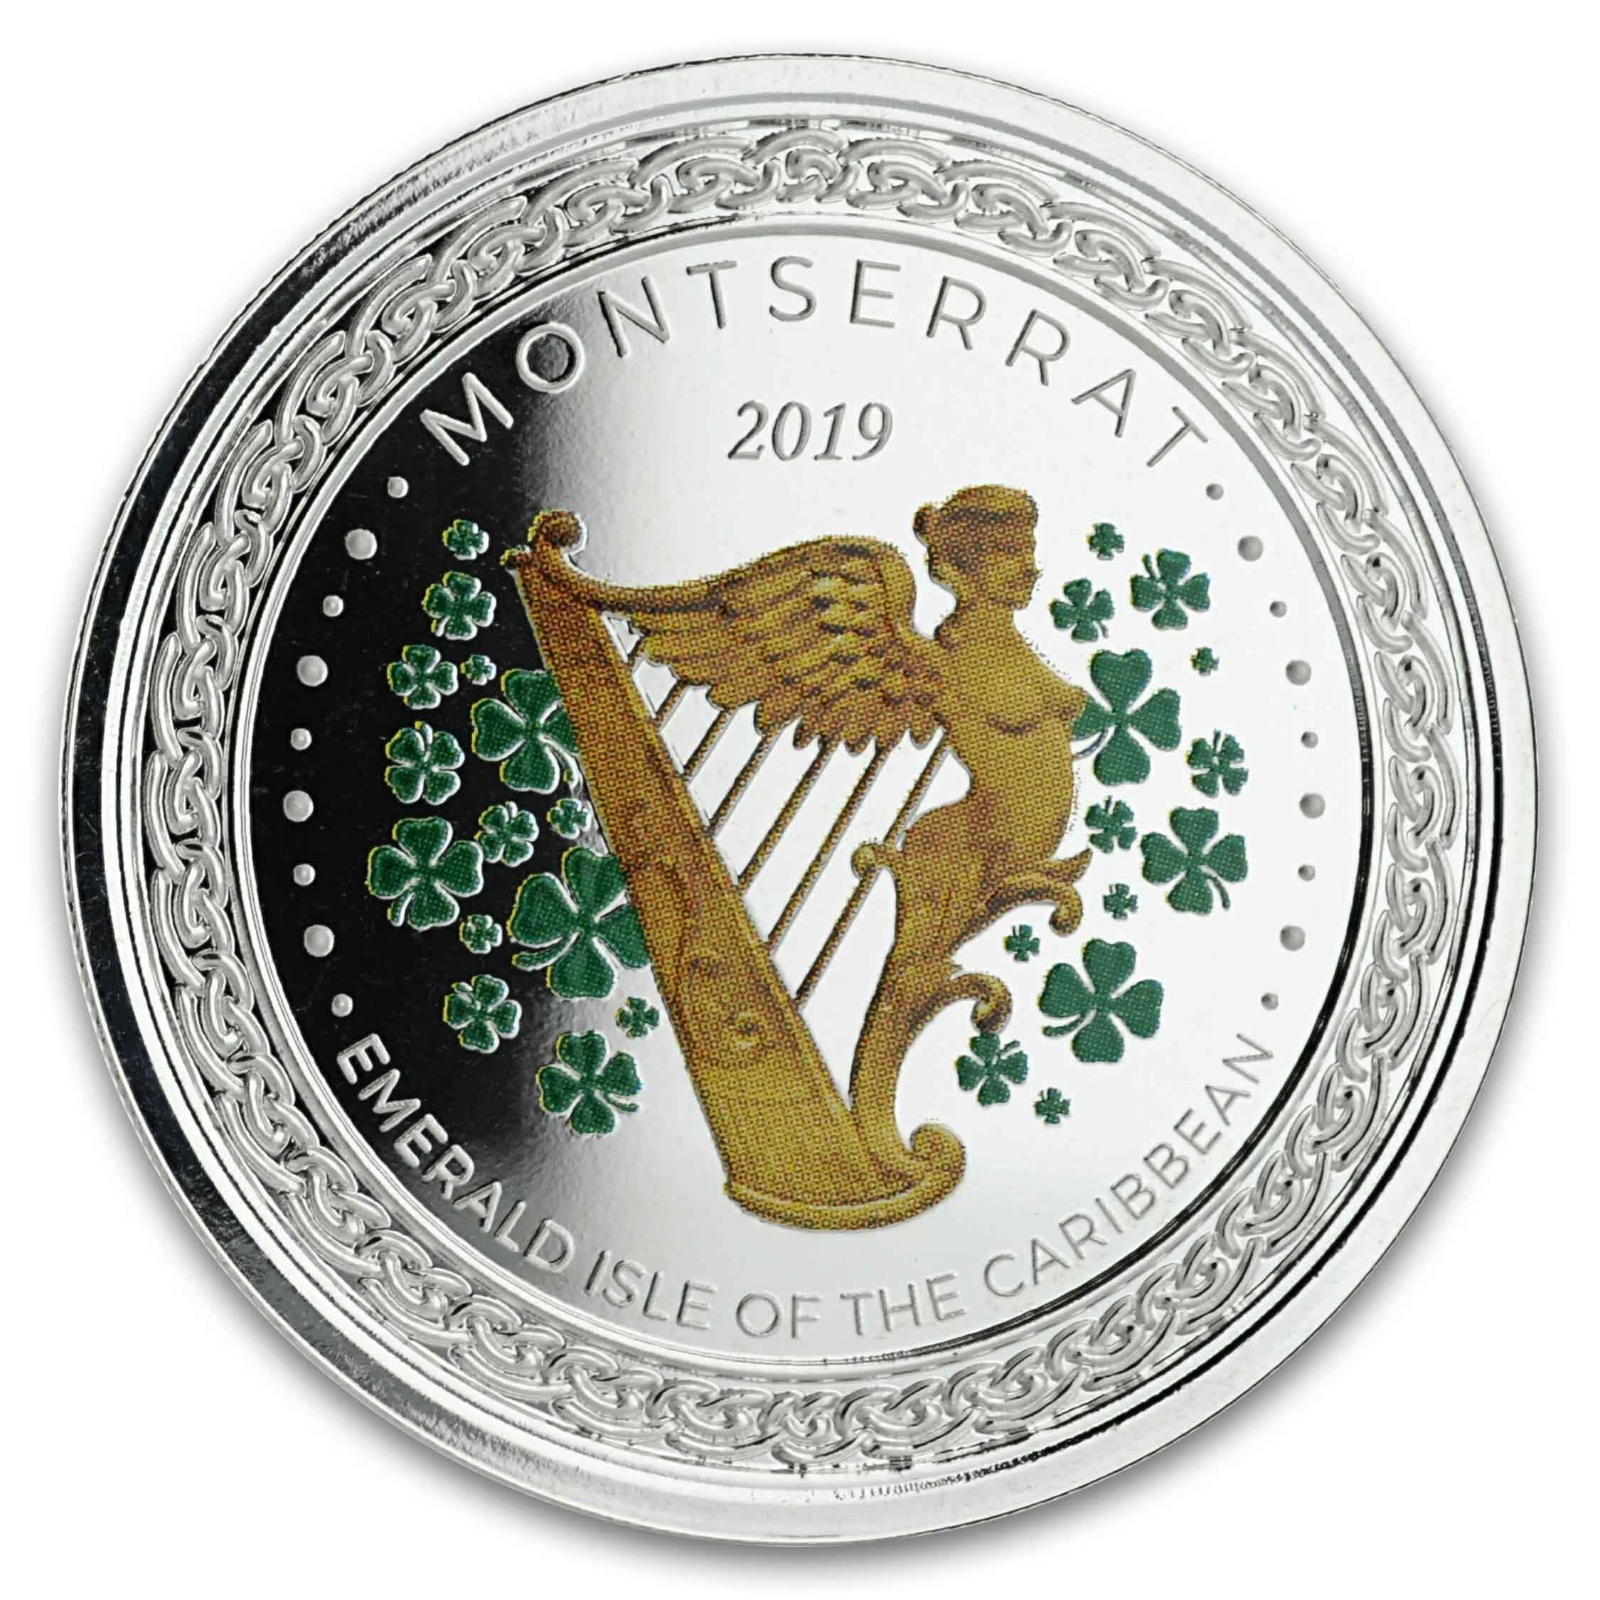 1 Oz Silver Coin 2019 EC8 Montserrat $2 Color - Emerald Isle of the Caribbean-classypw.com-1